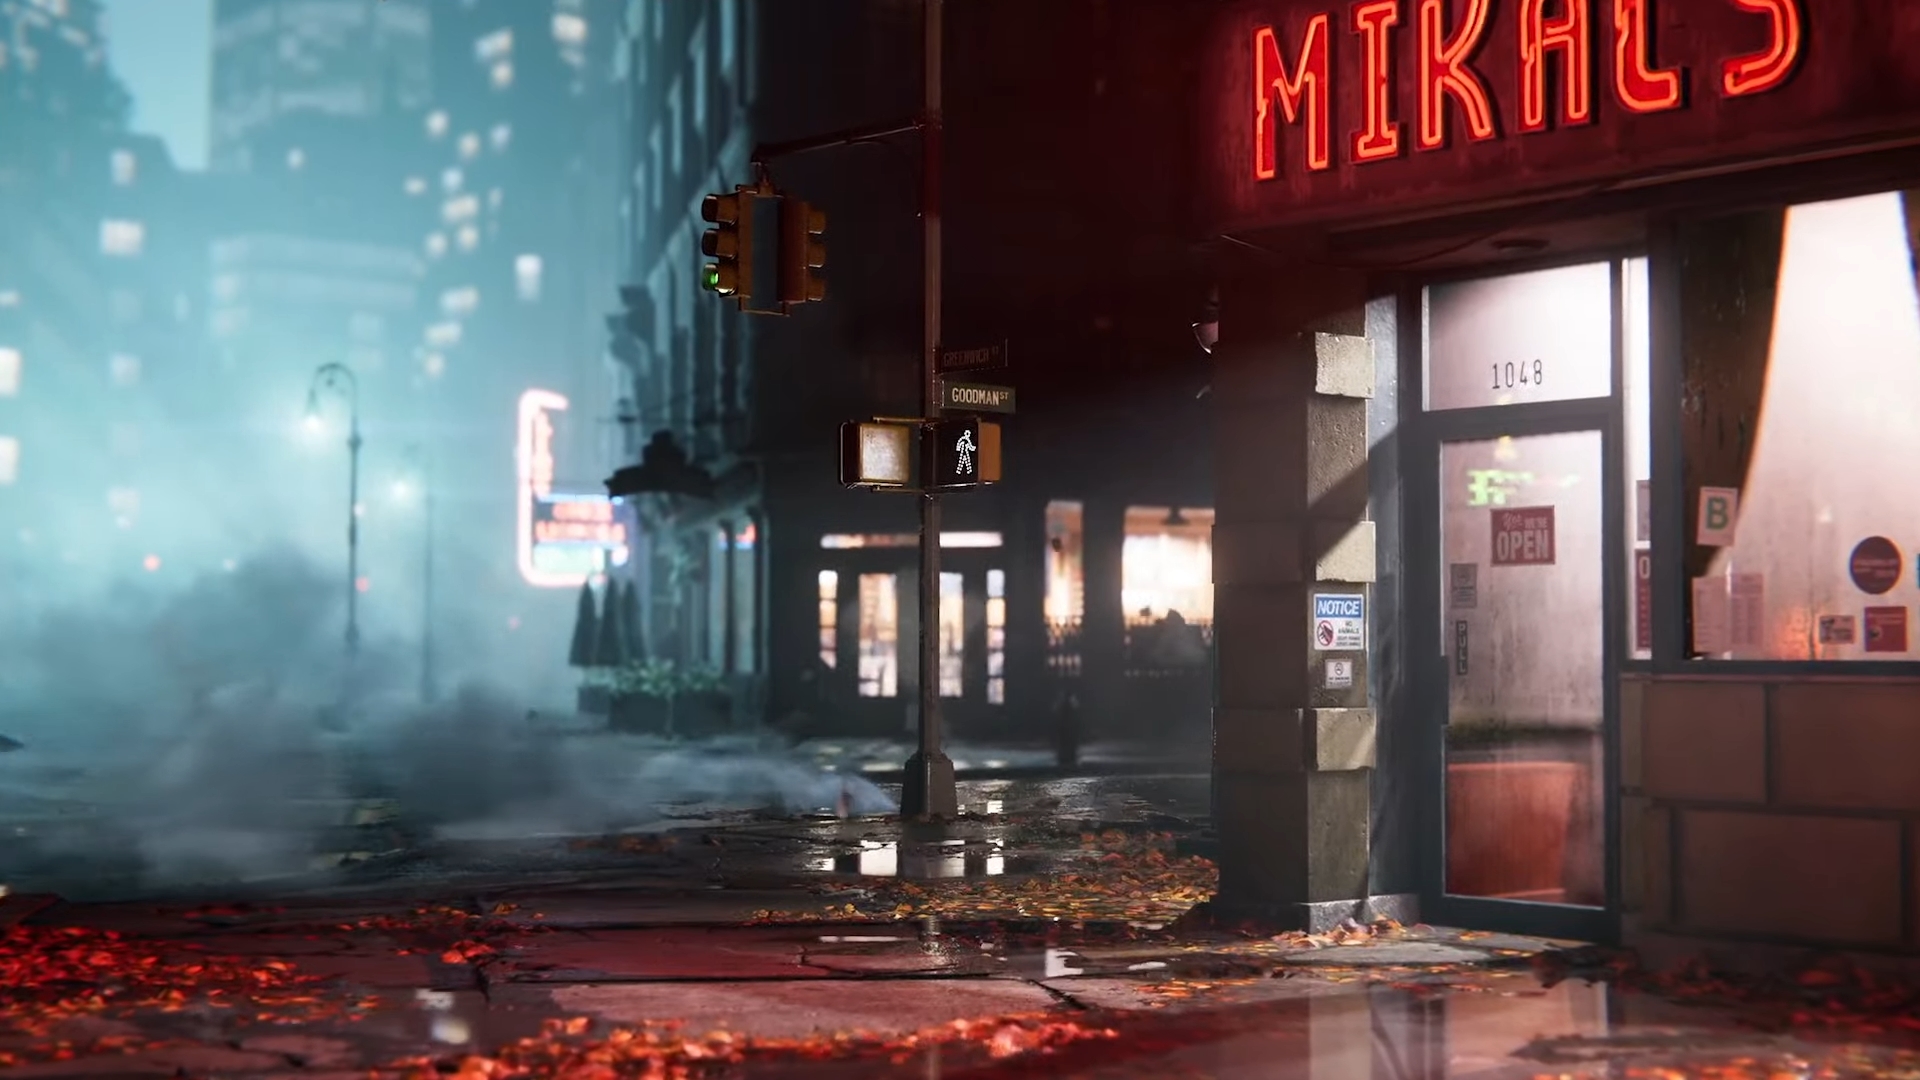 Cuplikan layar dari trailer Marvel's Spider-Man 2 menunjukkan sudut jalan Kota New York pada malam hari, diterangi oleh lampu jalan dan lampu dari dalam gedung